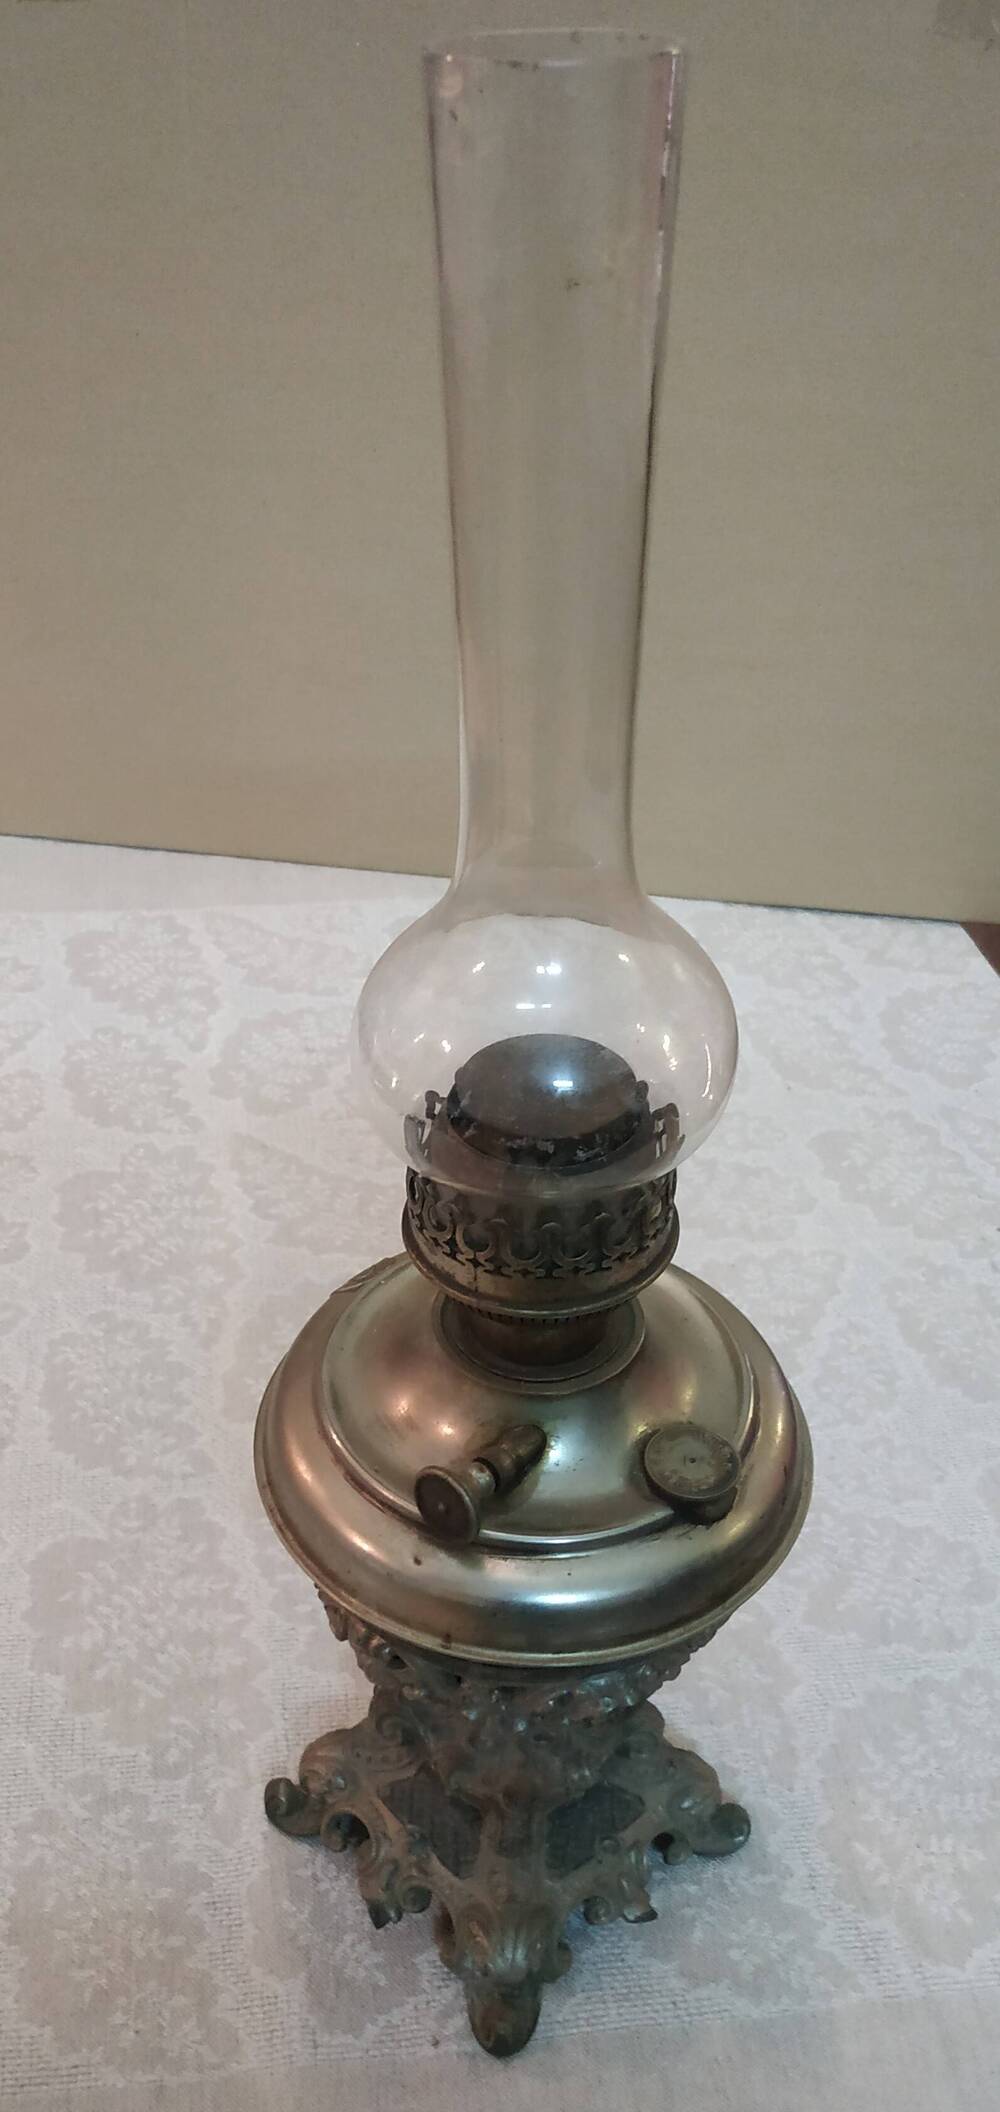 Лампа керосиновая со стеклом, на подставке.